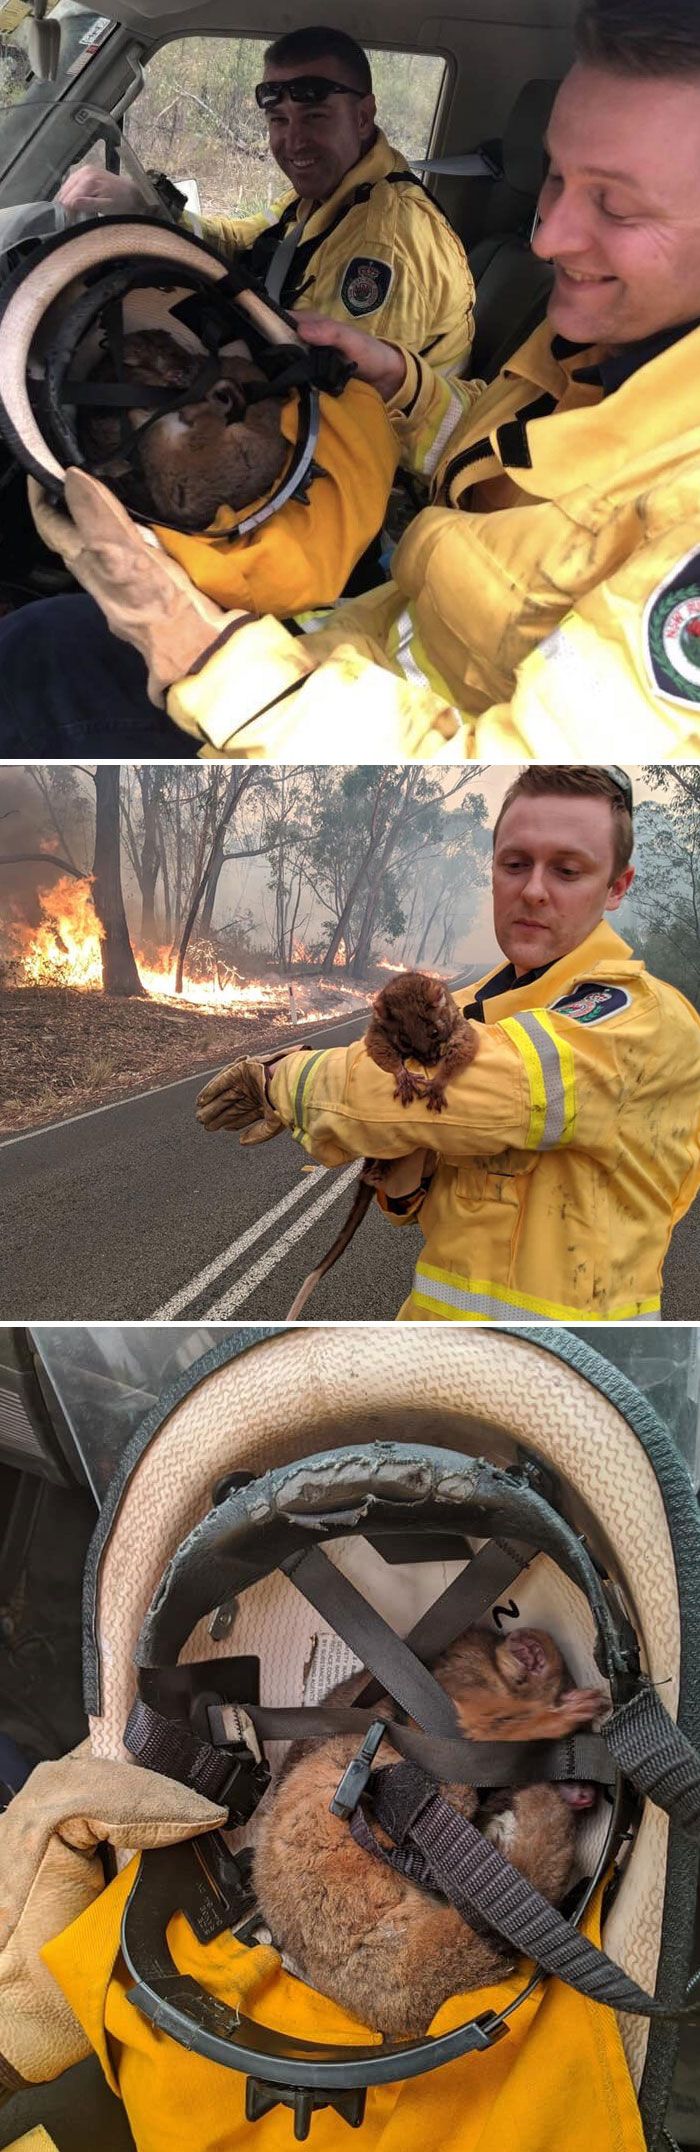 36 imagens que mostram os horrores dos incêndios na Austrália 33